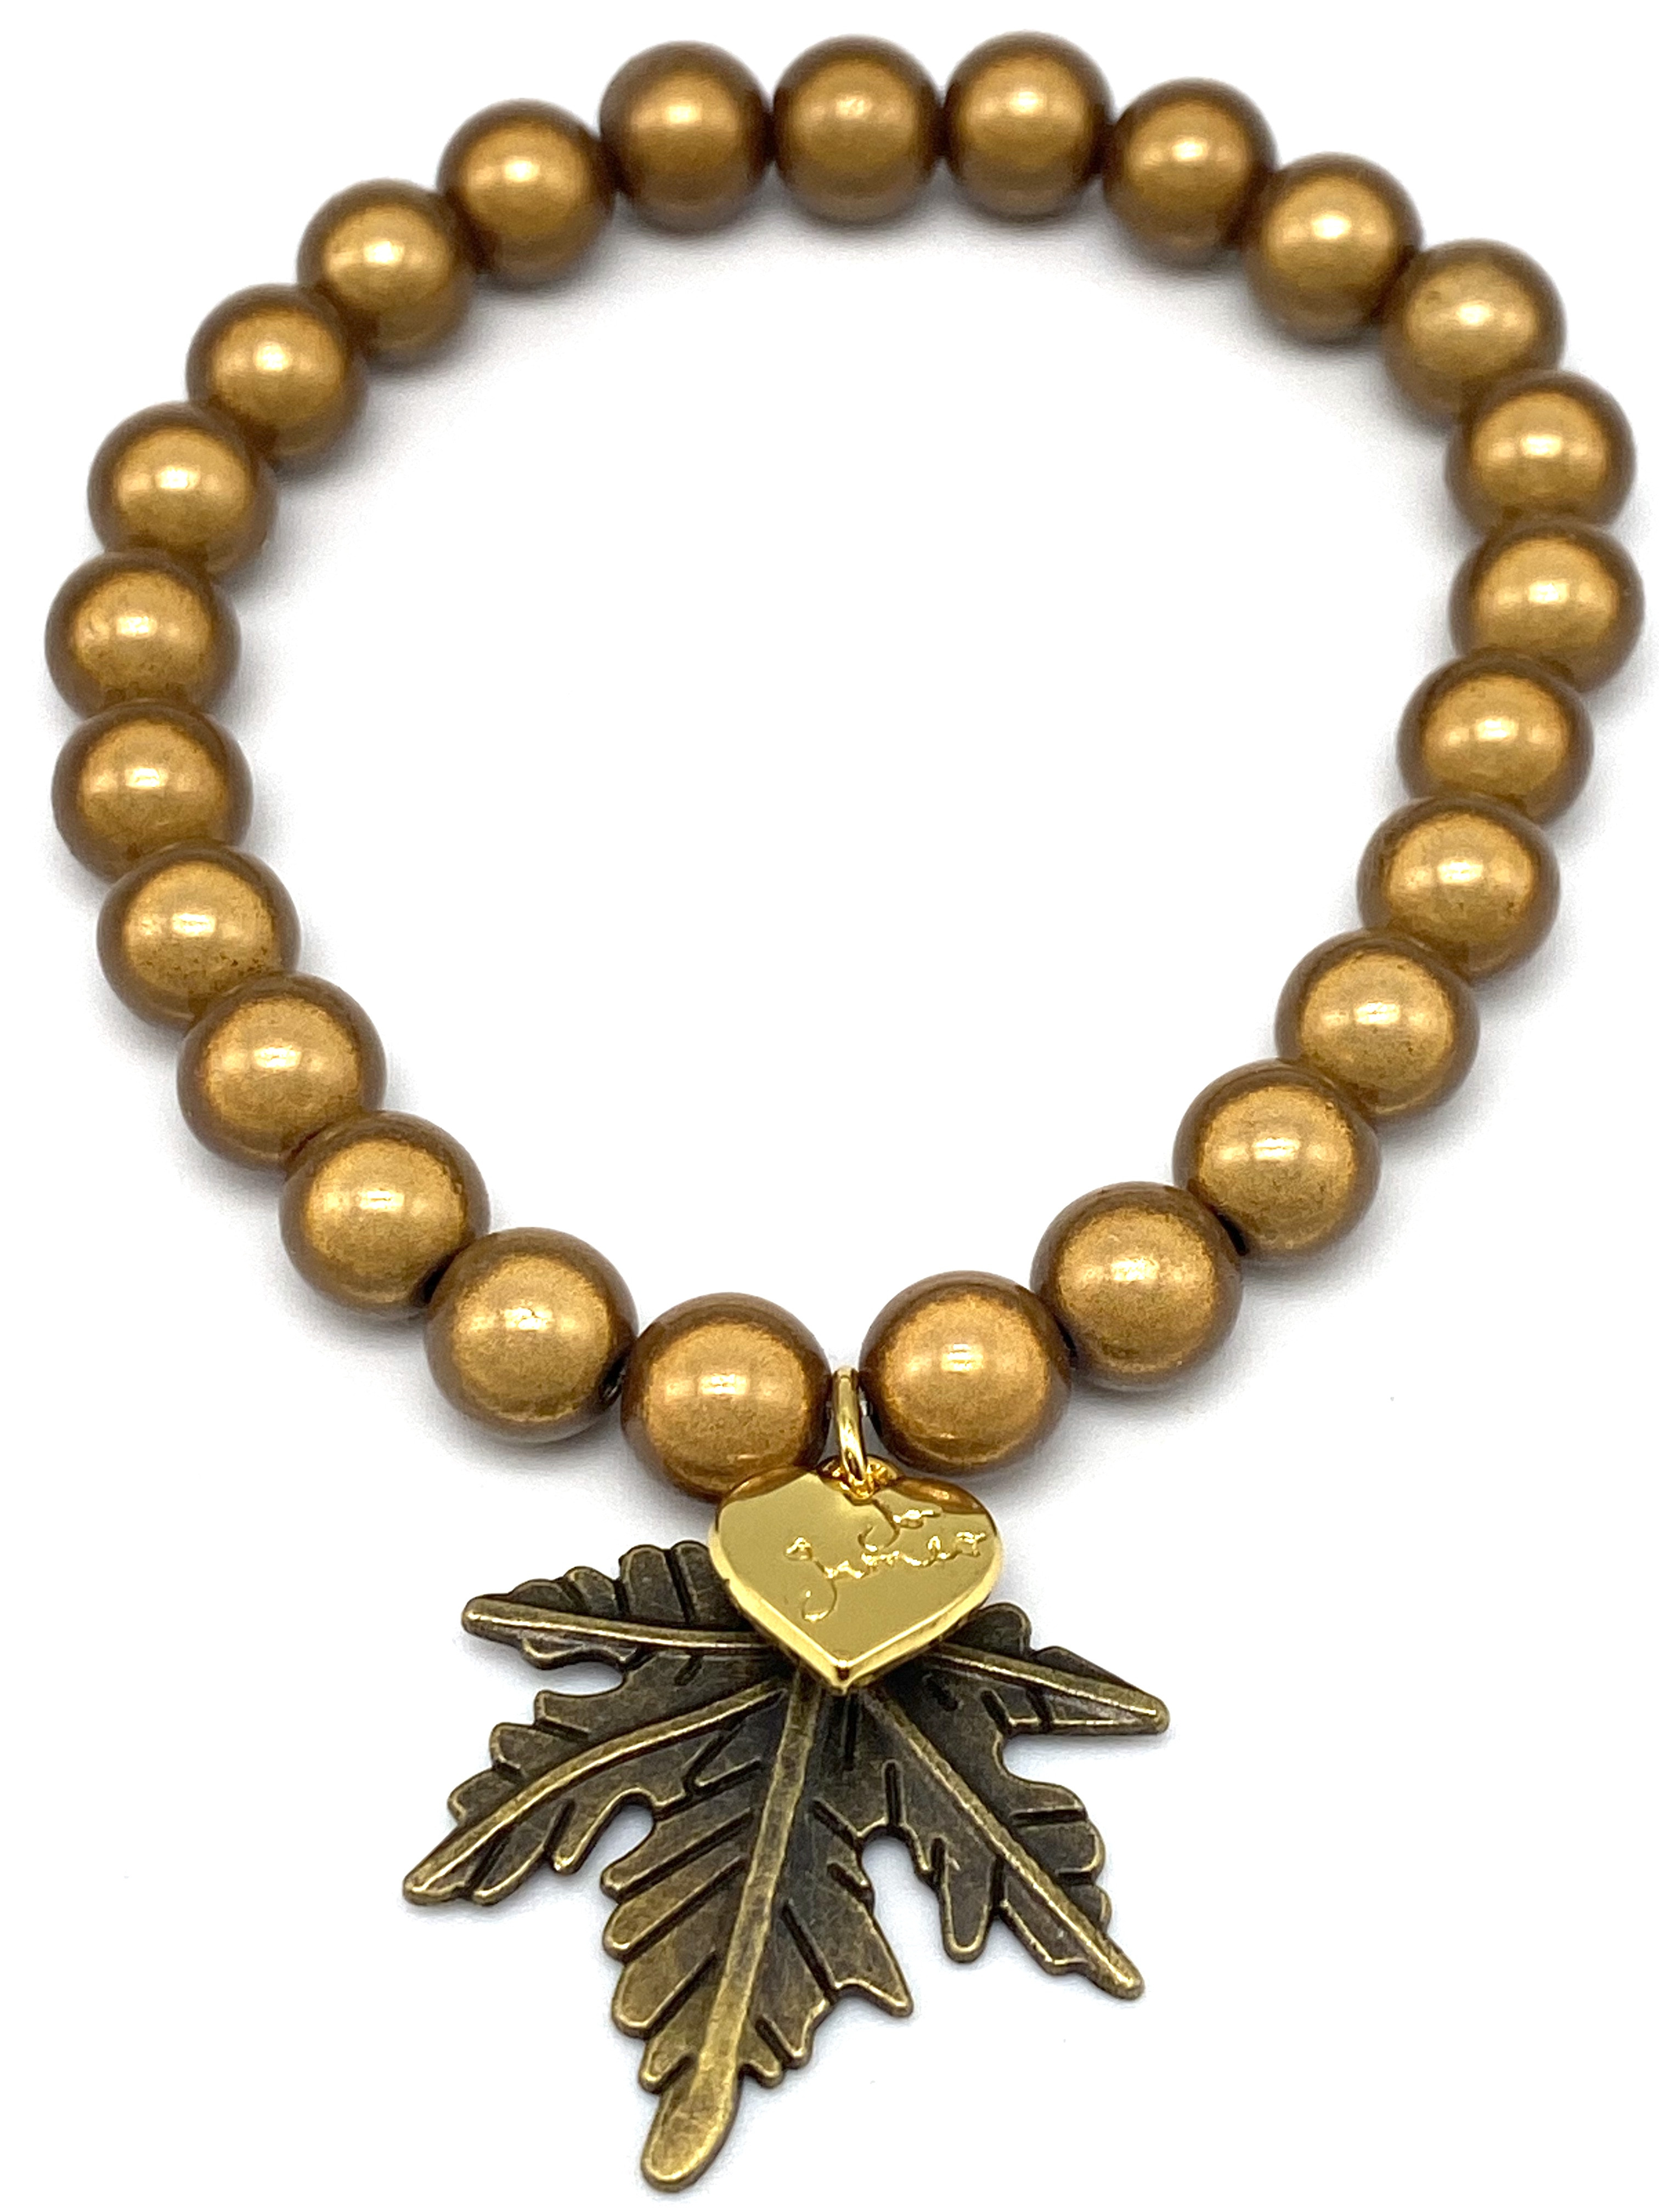 Golden Leaf Bracelet